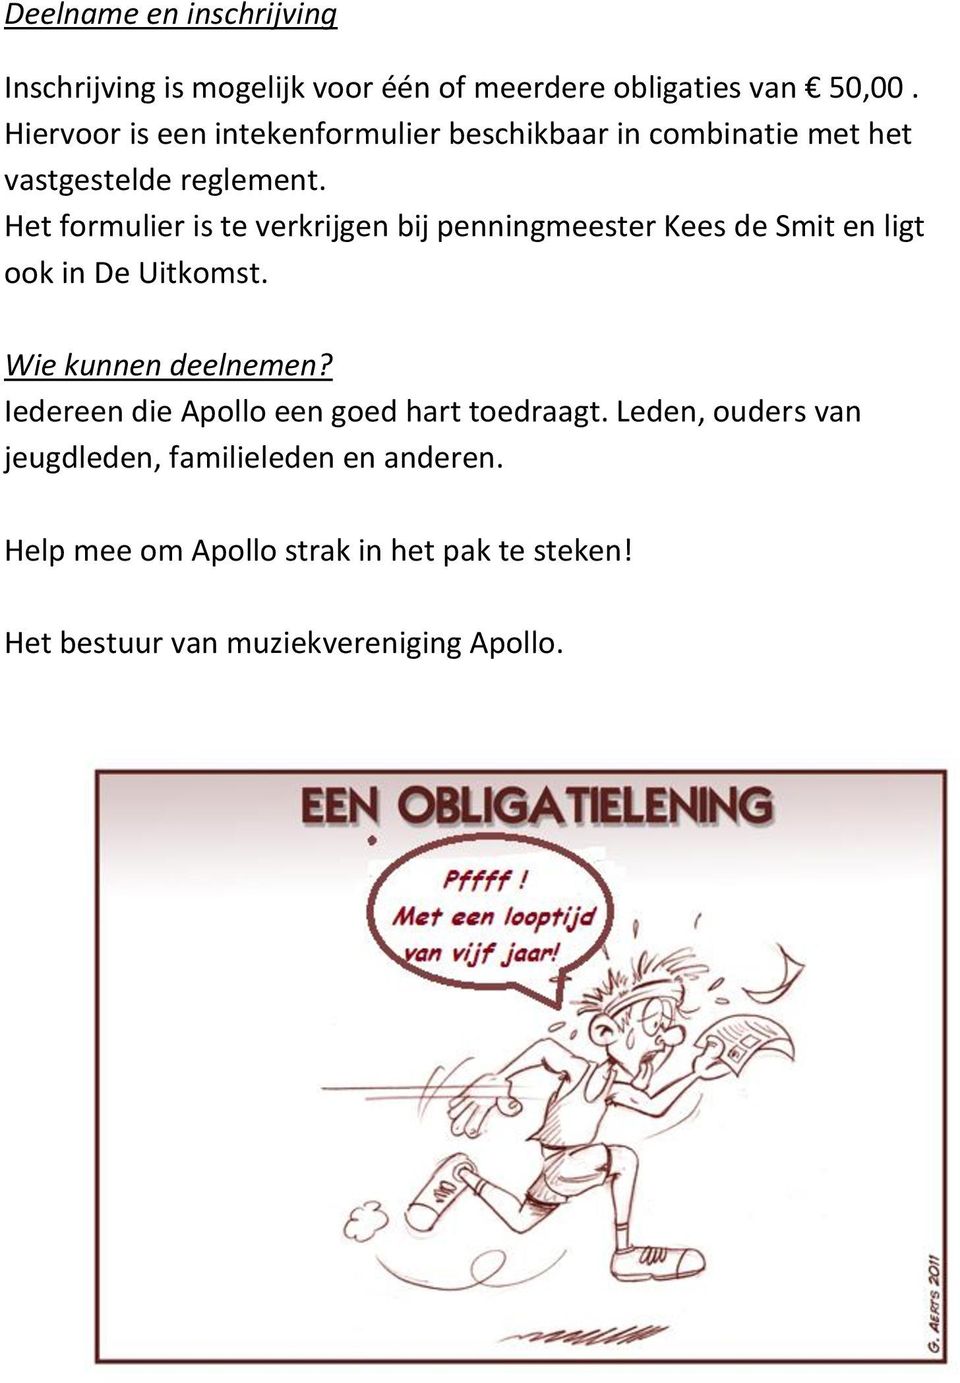 Het formulier is te verkrijgen bij penningmeester Kees de Smit en ligt ook in De Uitkomst. Wie kunnen deelnemen?